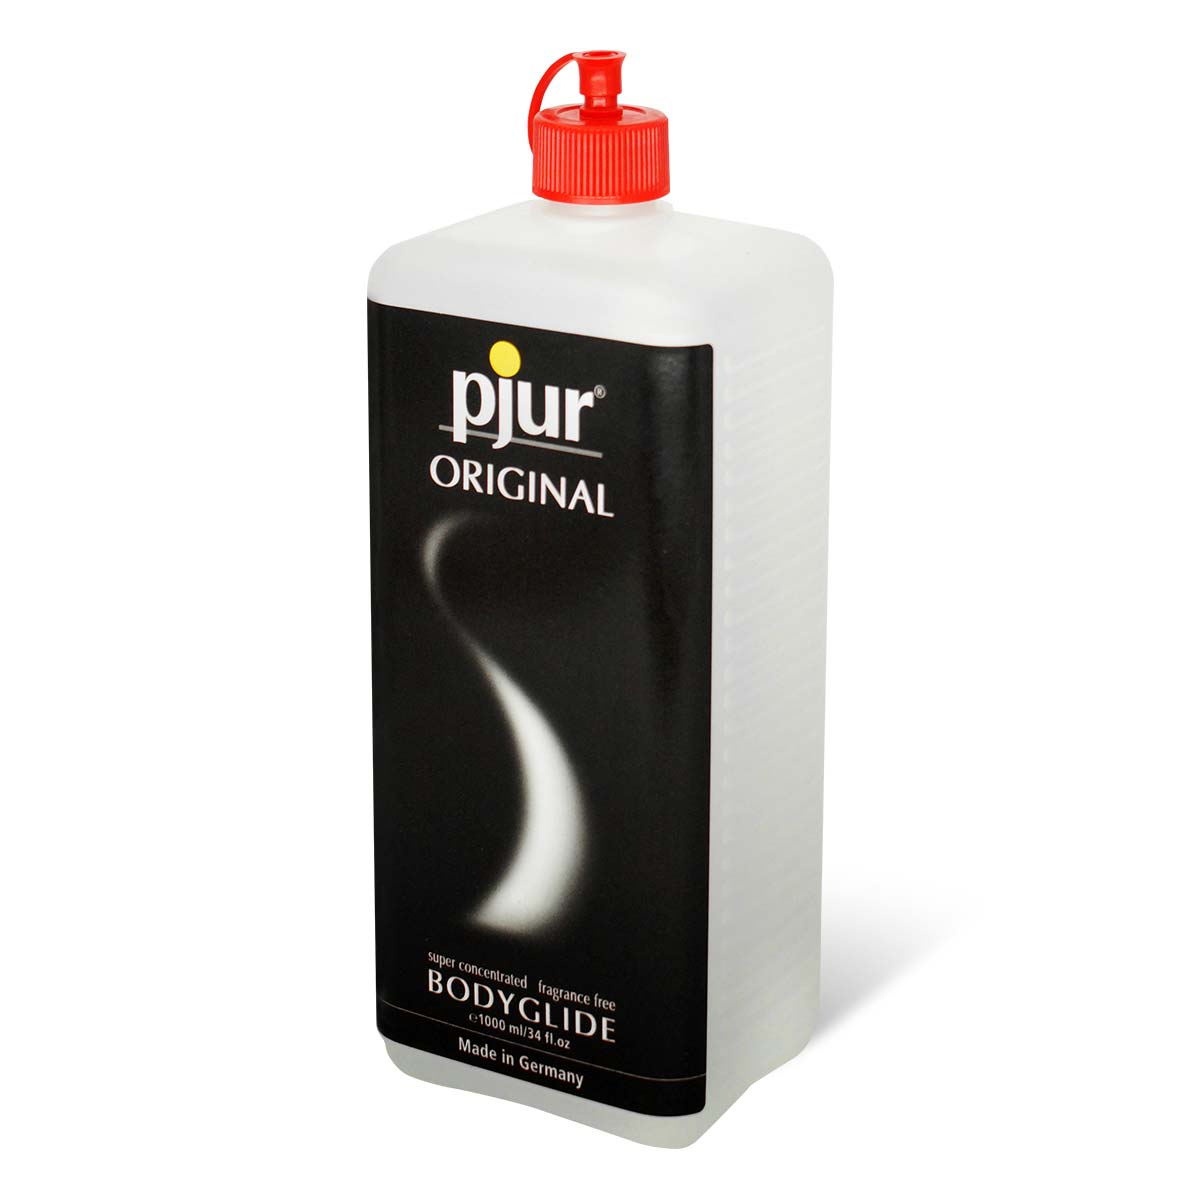 pjur ORIGINAL 1000ml 矽性潤滑液-p_1